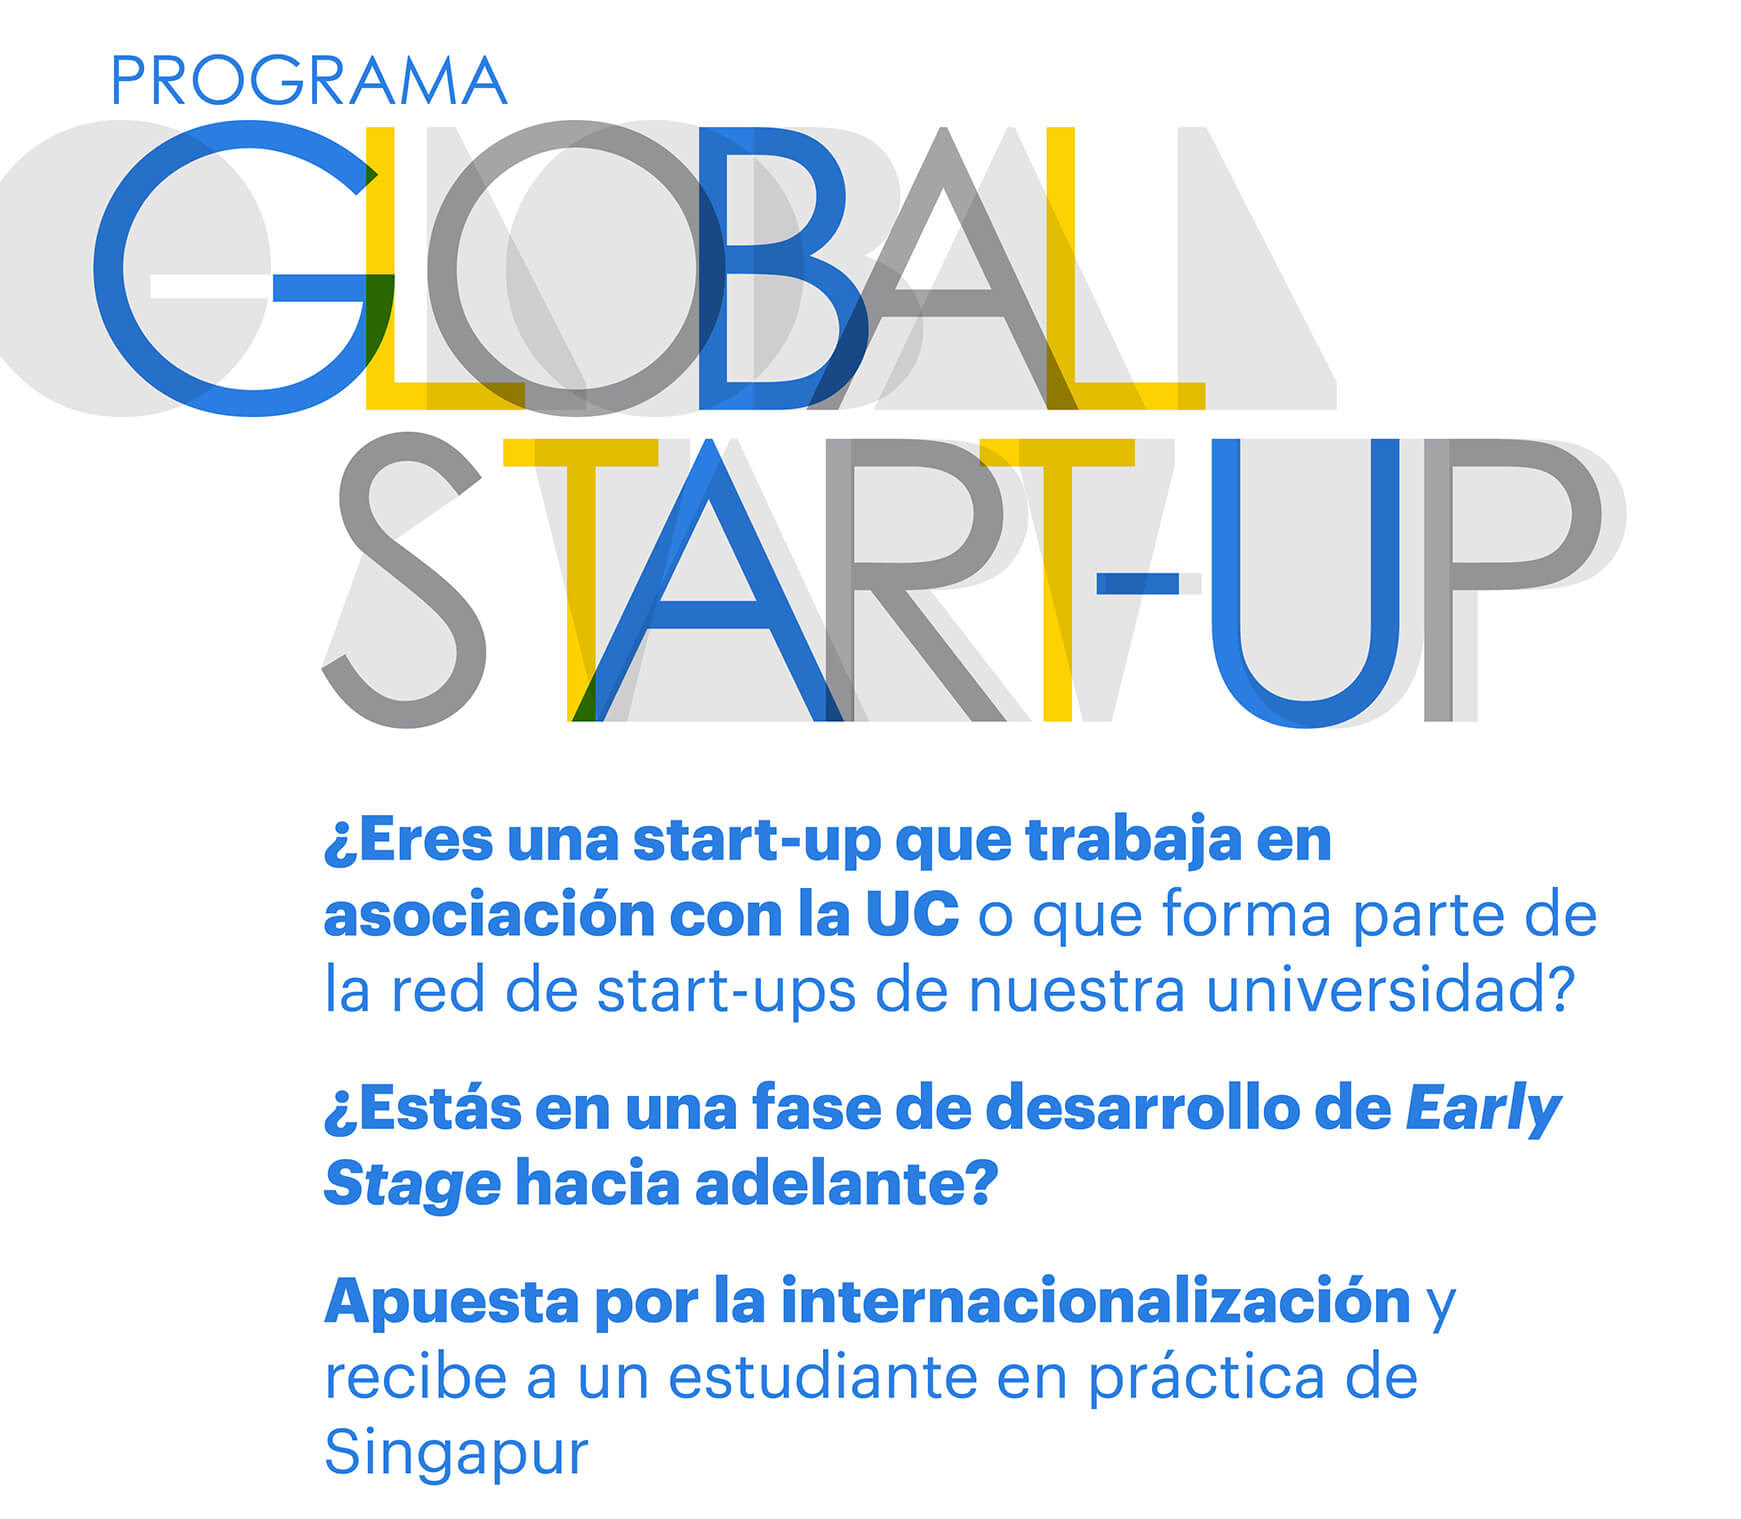 Programa ofrece prácticas profesionales para startups UC 